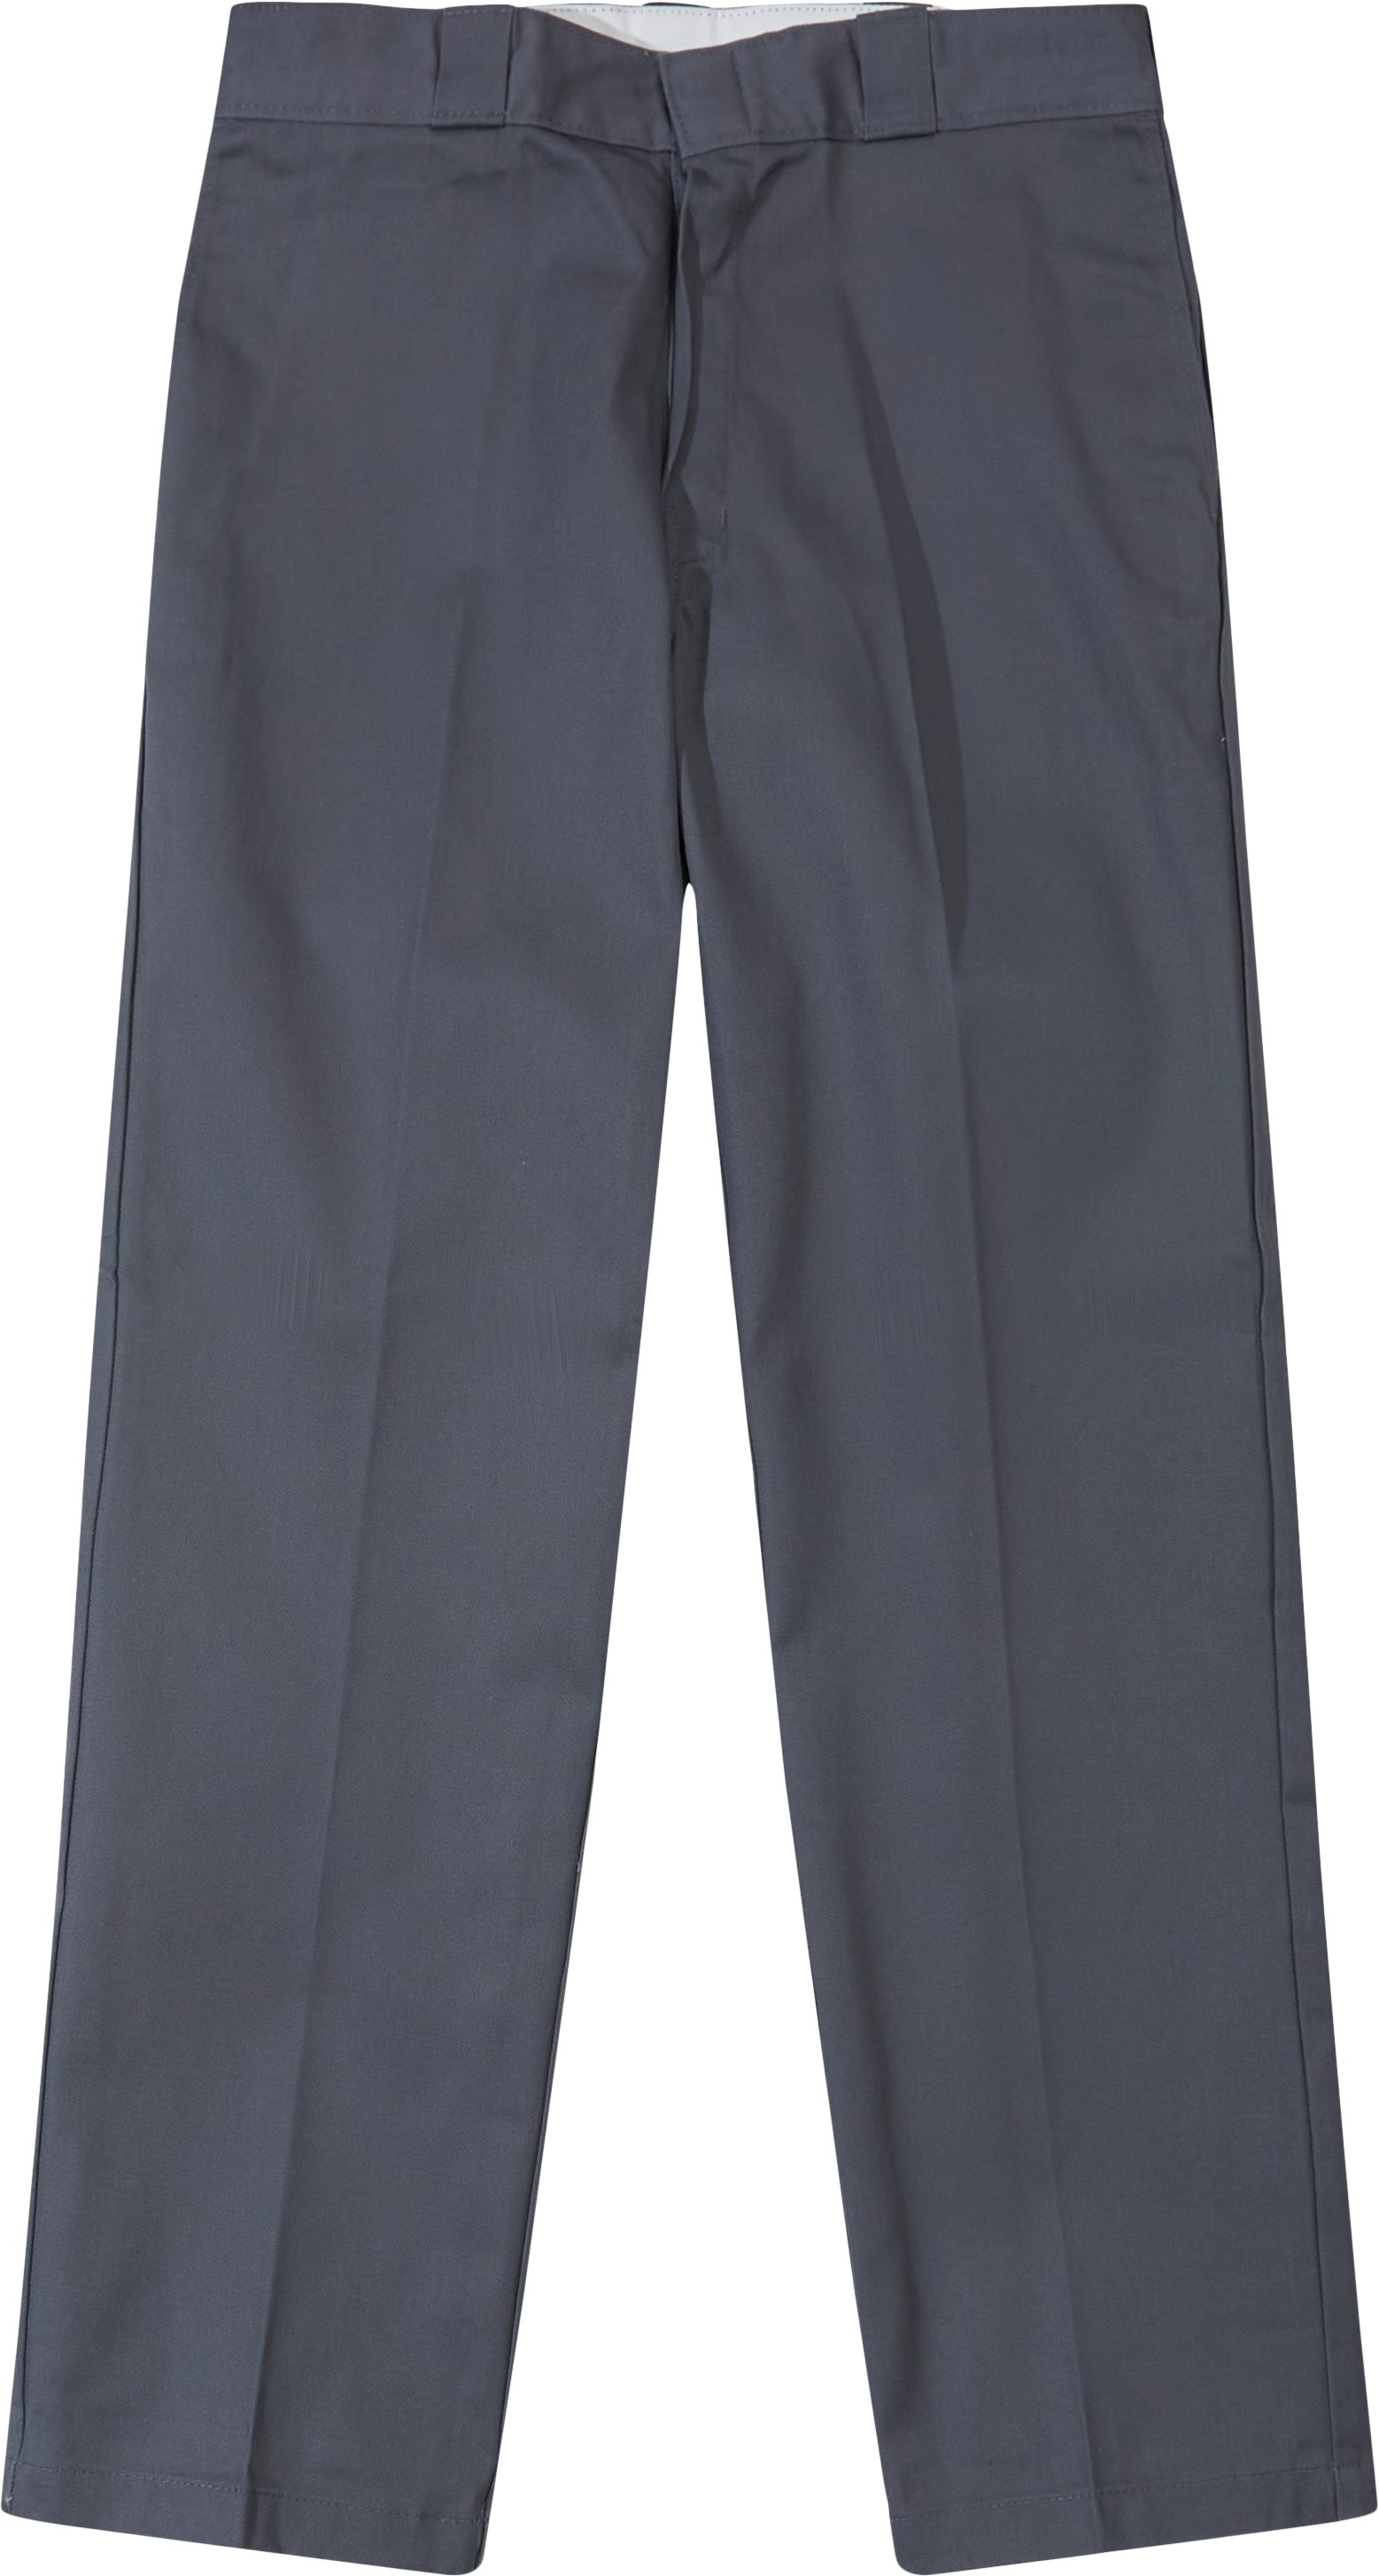 Dickies Trousers 874 WORK PANT ORIGINAL Grey